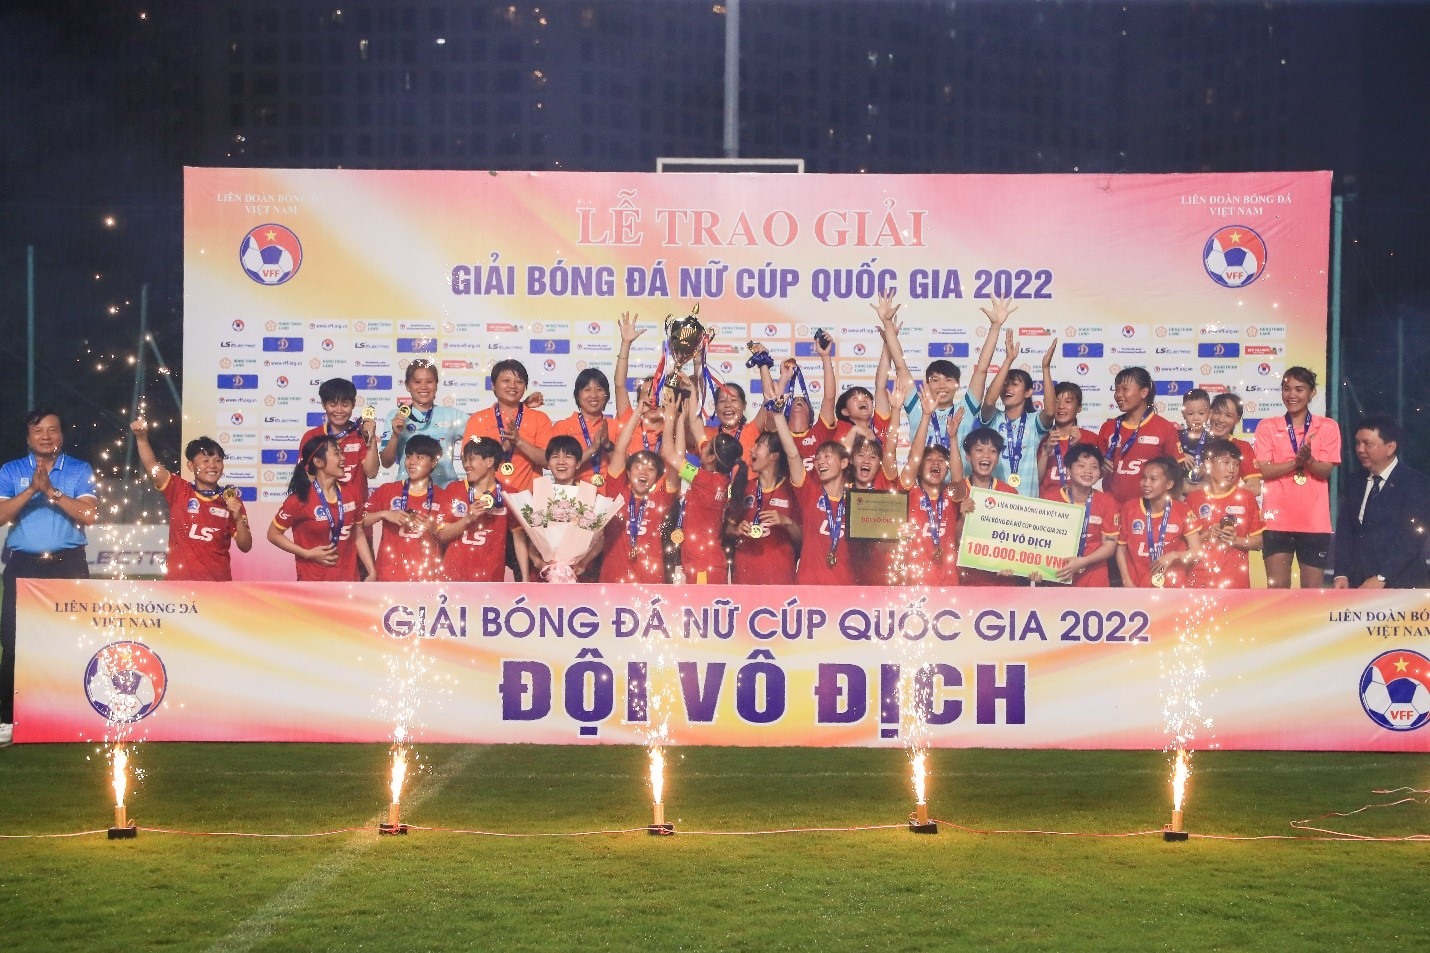 Chiến thắng trước Hà Nội I giúp TPHCM I có lần thứ 3 lên ngôi vô địch ở giải bóng đá Nữ Cúp Quốc gia.